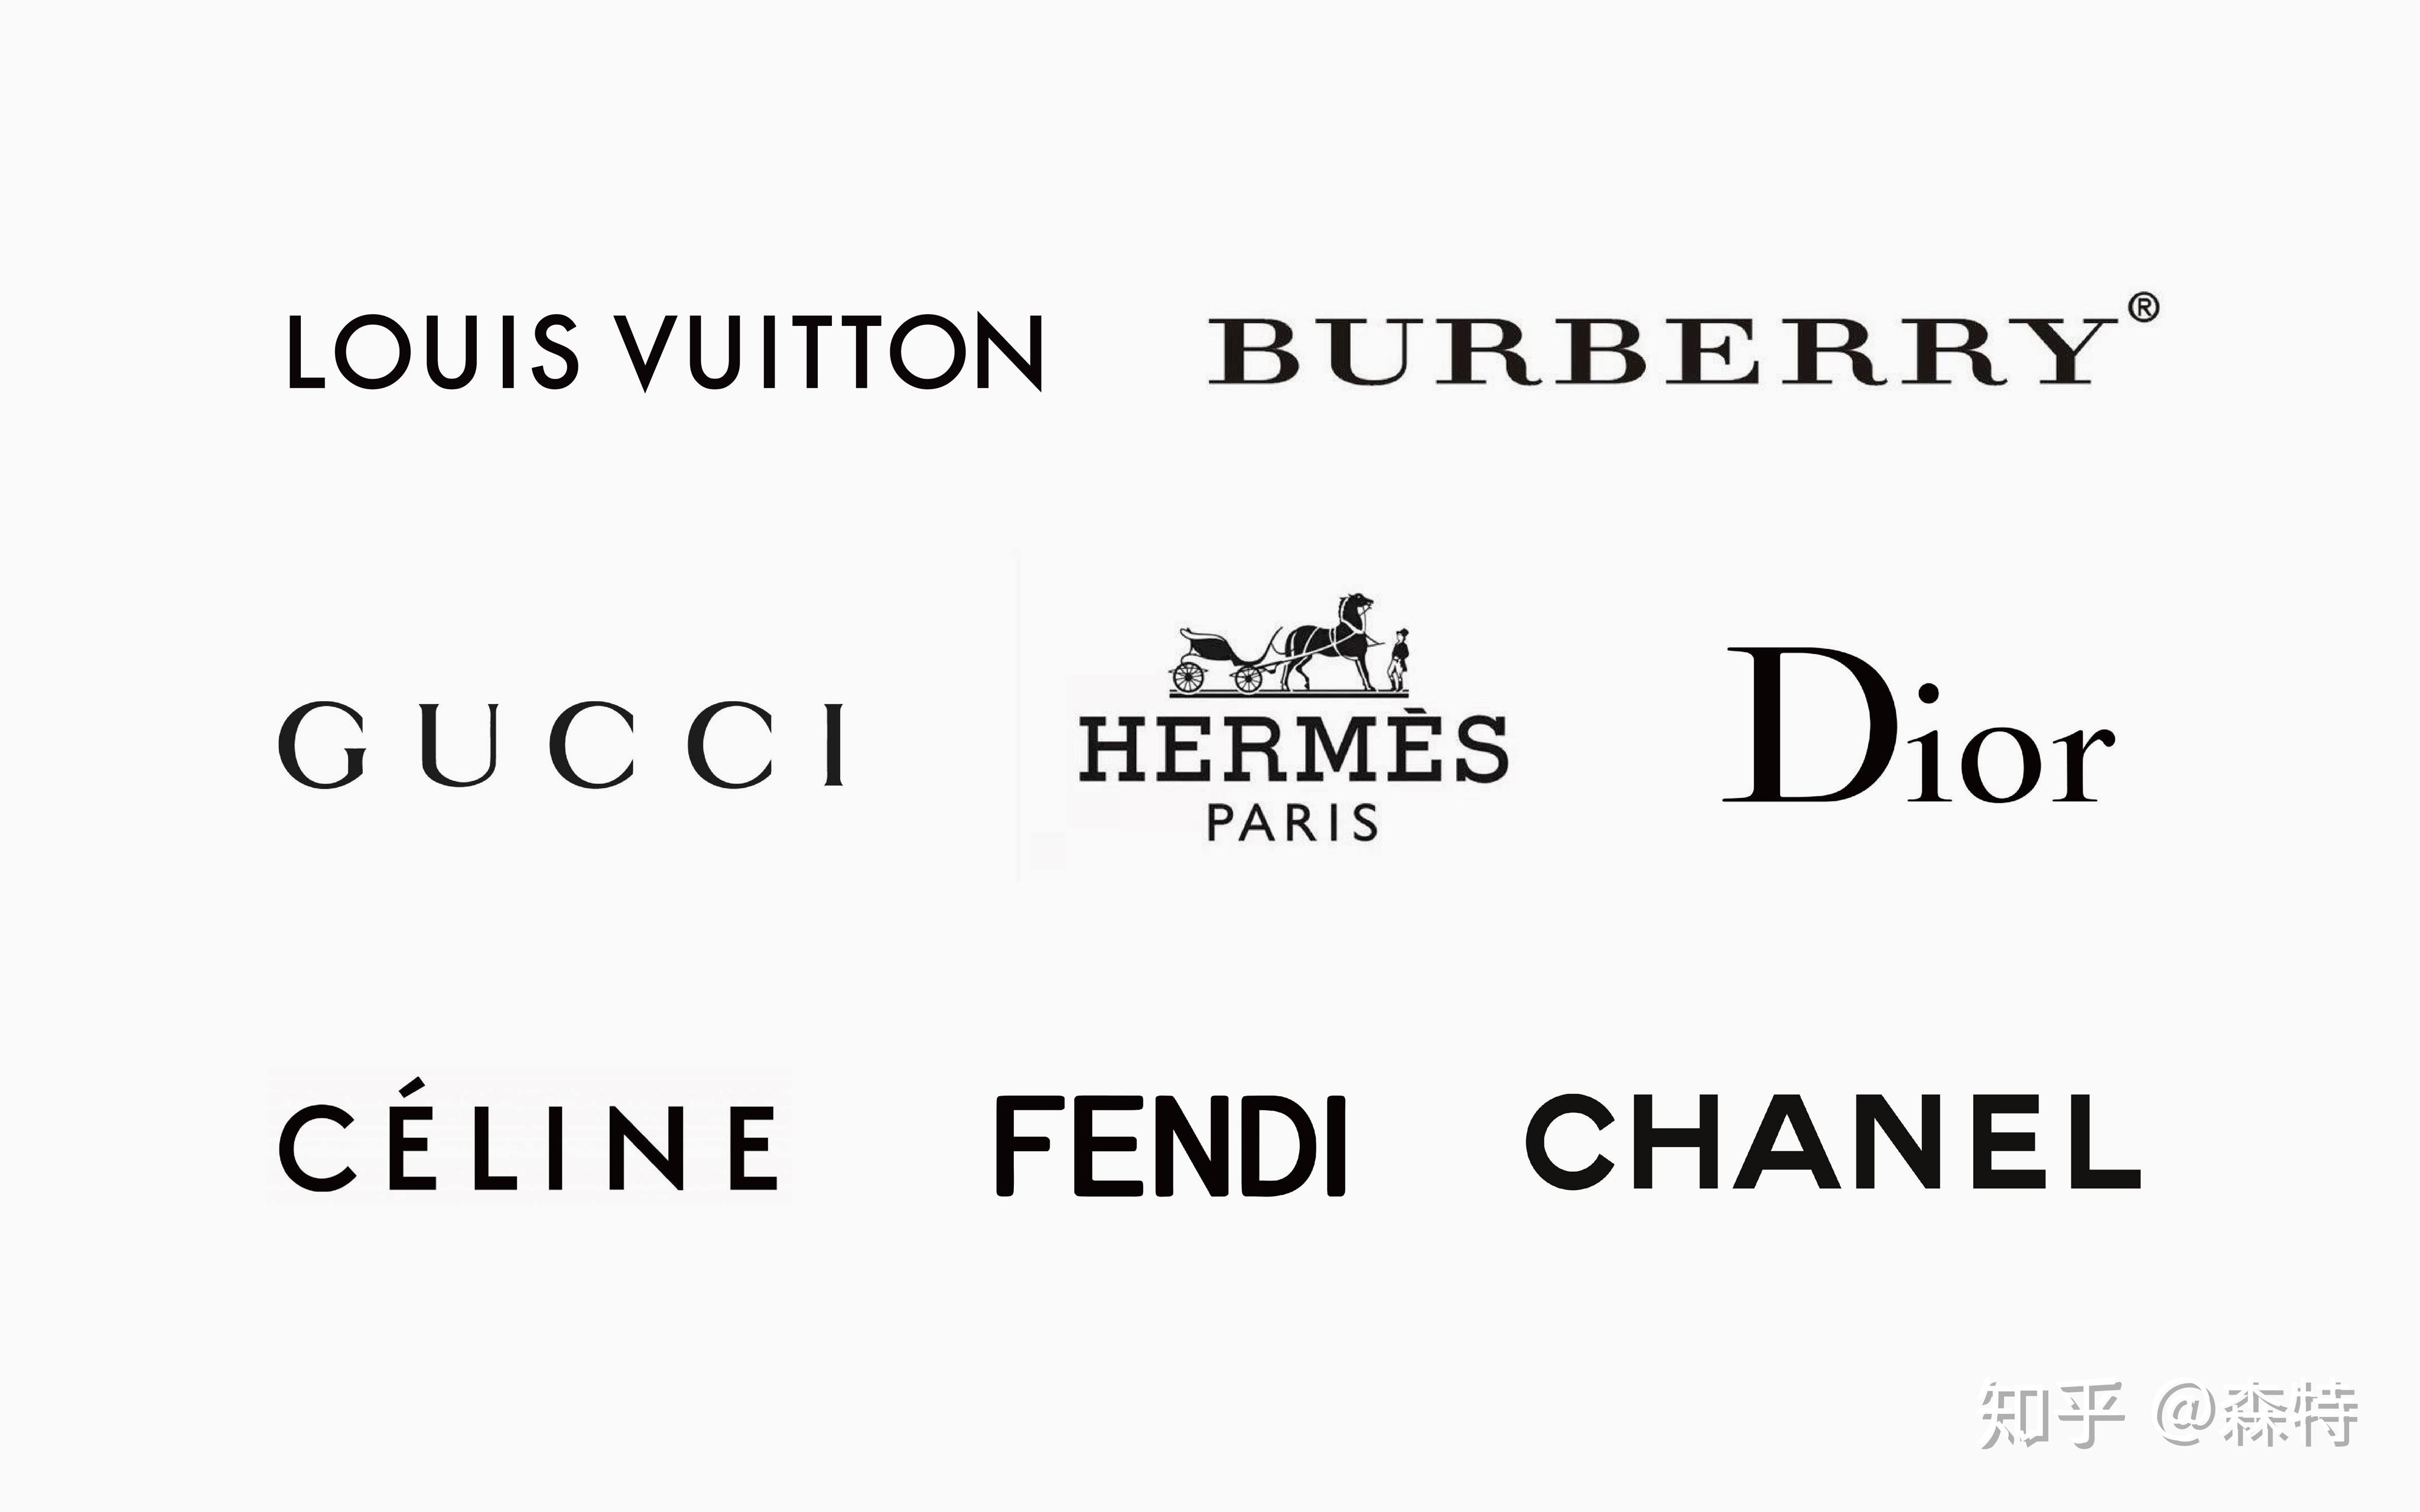 先上一个奢侈品牌的logotype集合,来感受一下奢侈的逼格!